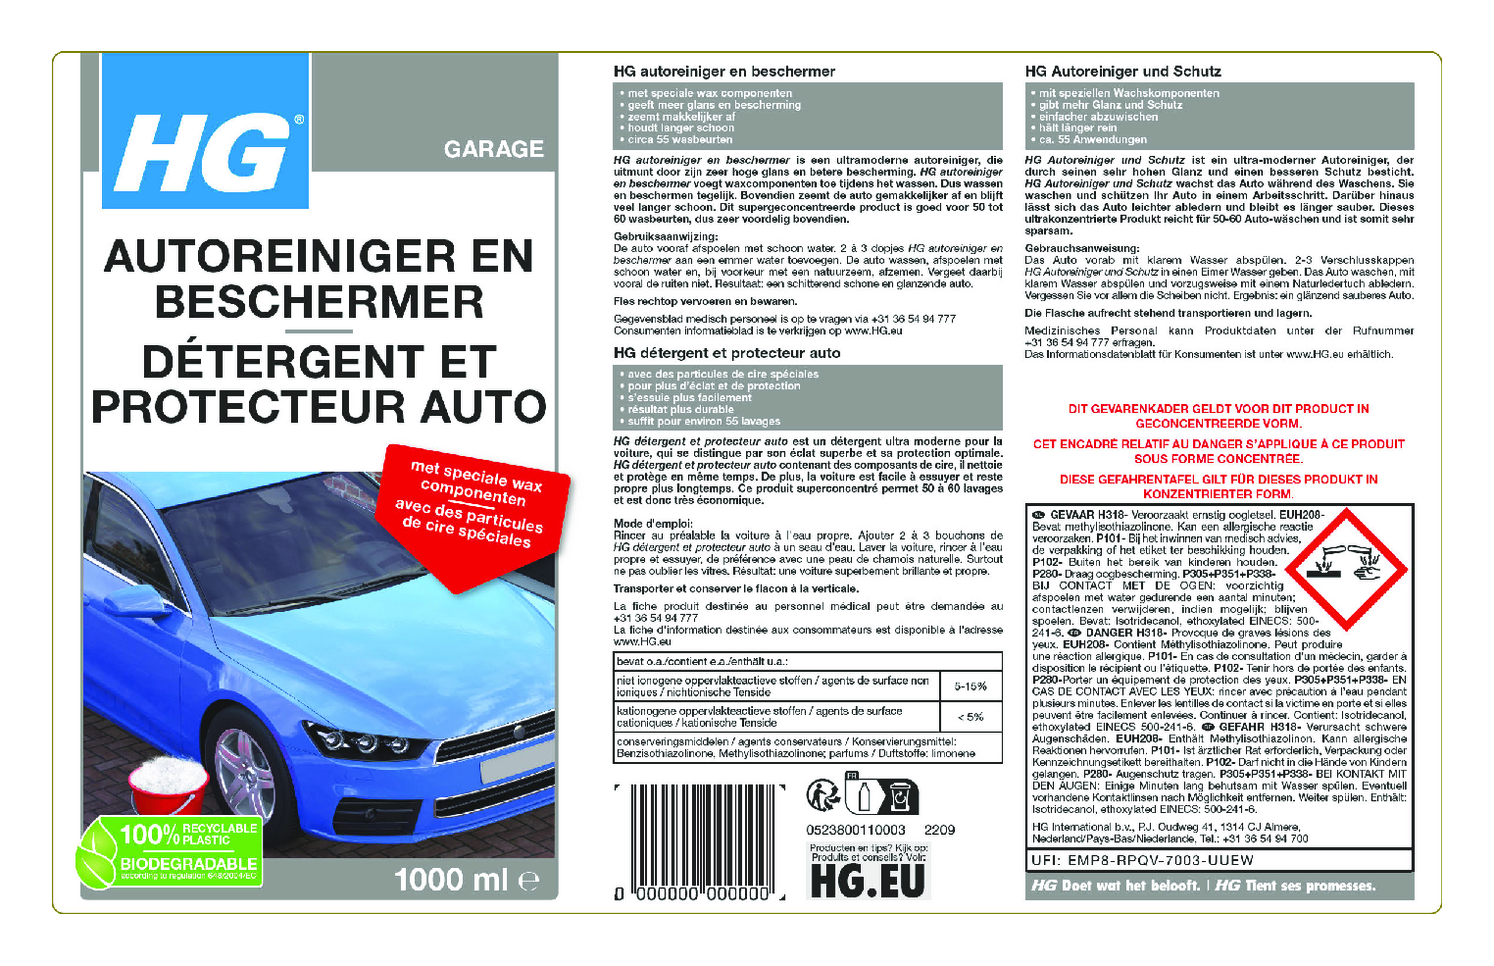 Auto Reiniger & Beschermer afbeelding van document #1, etiket